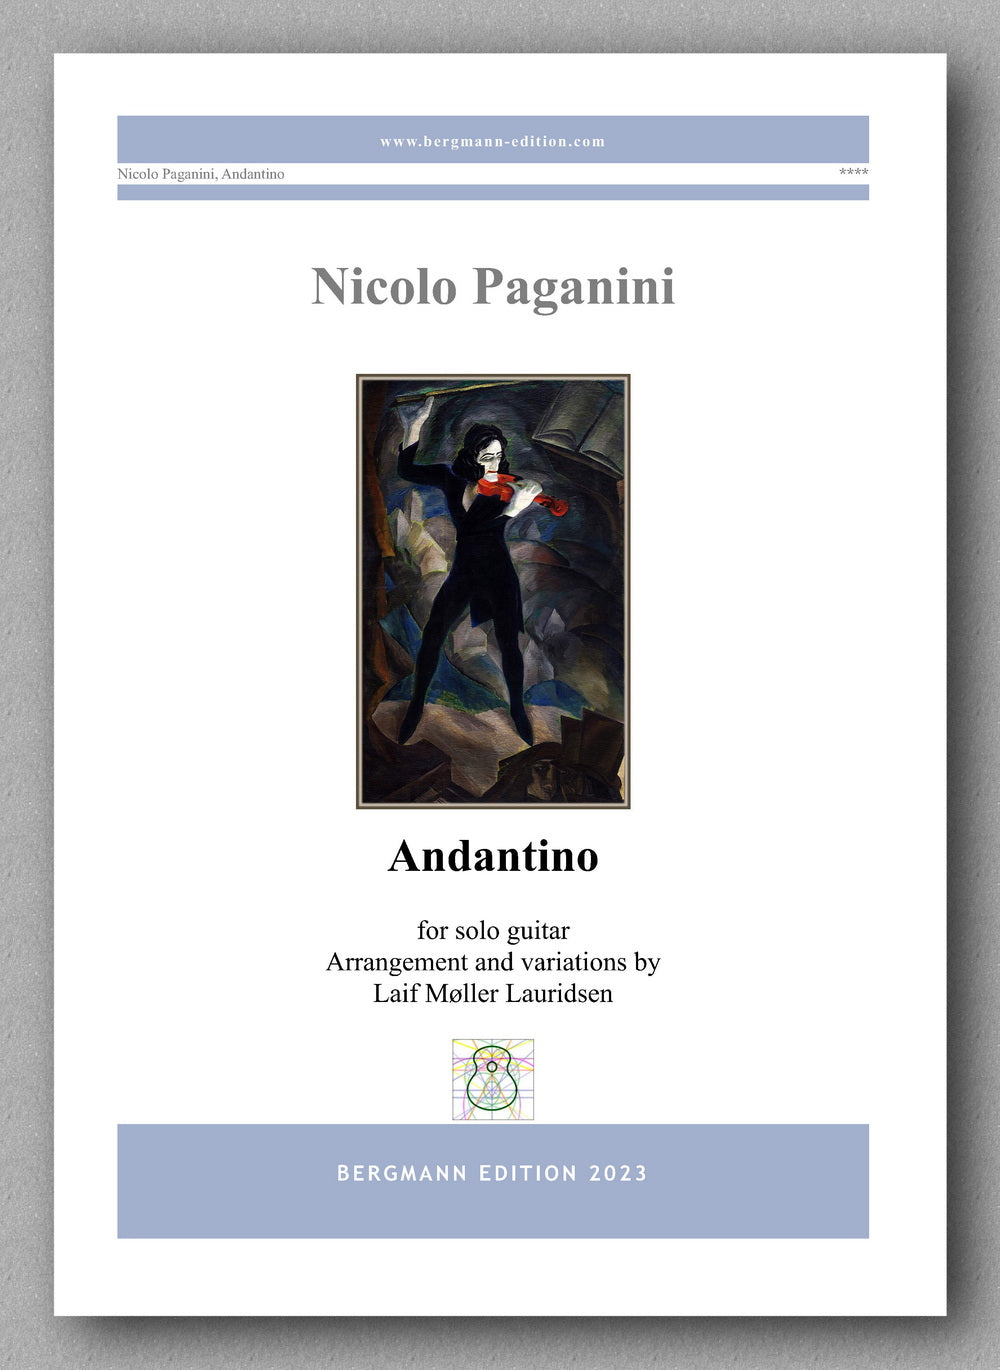 Nicolo Paganini, Andantino - preview of the cover